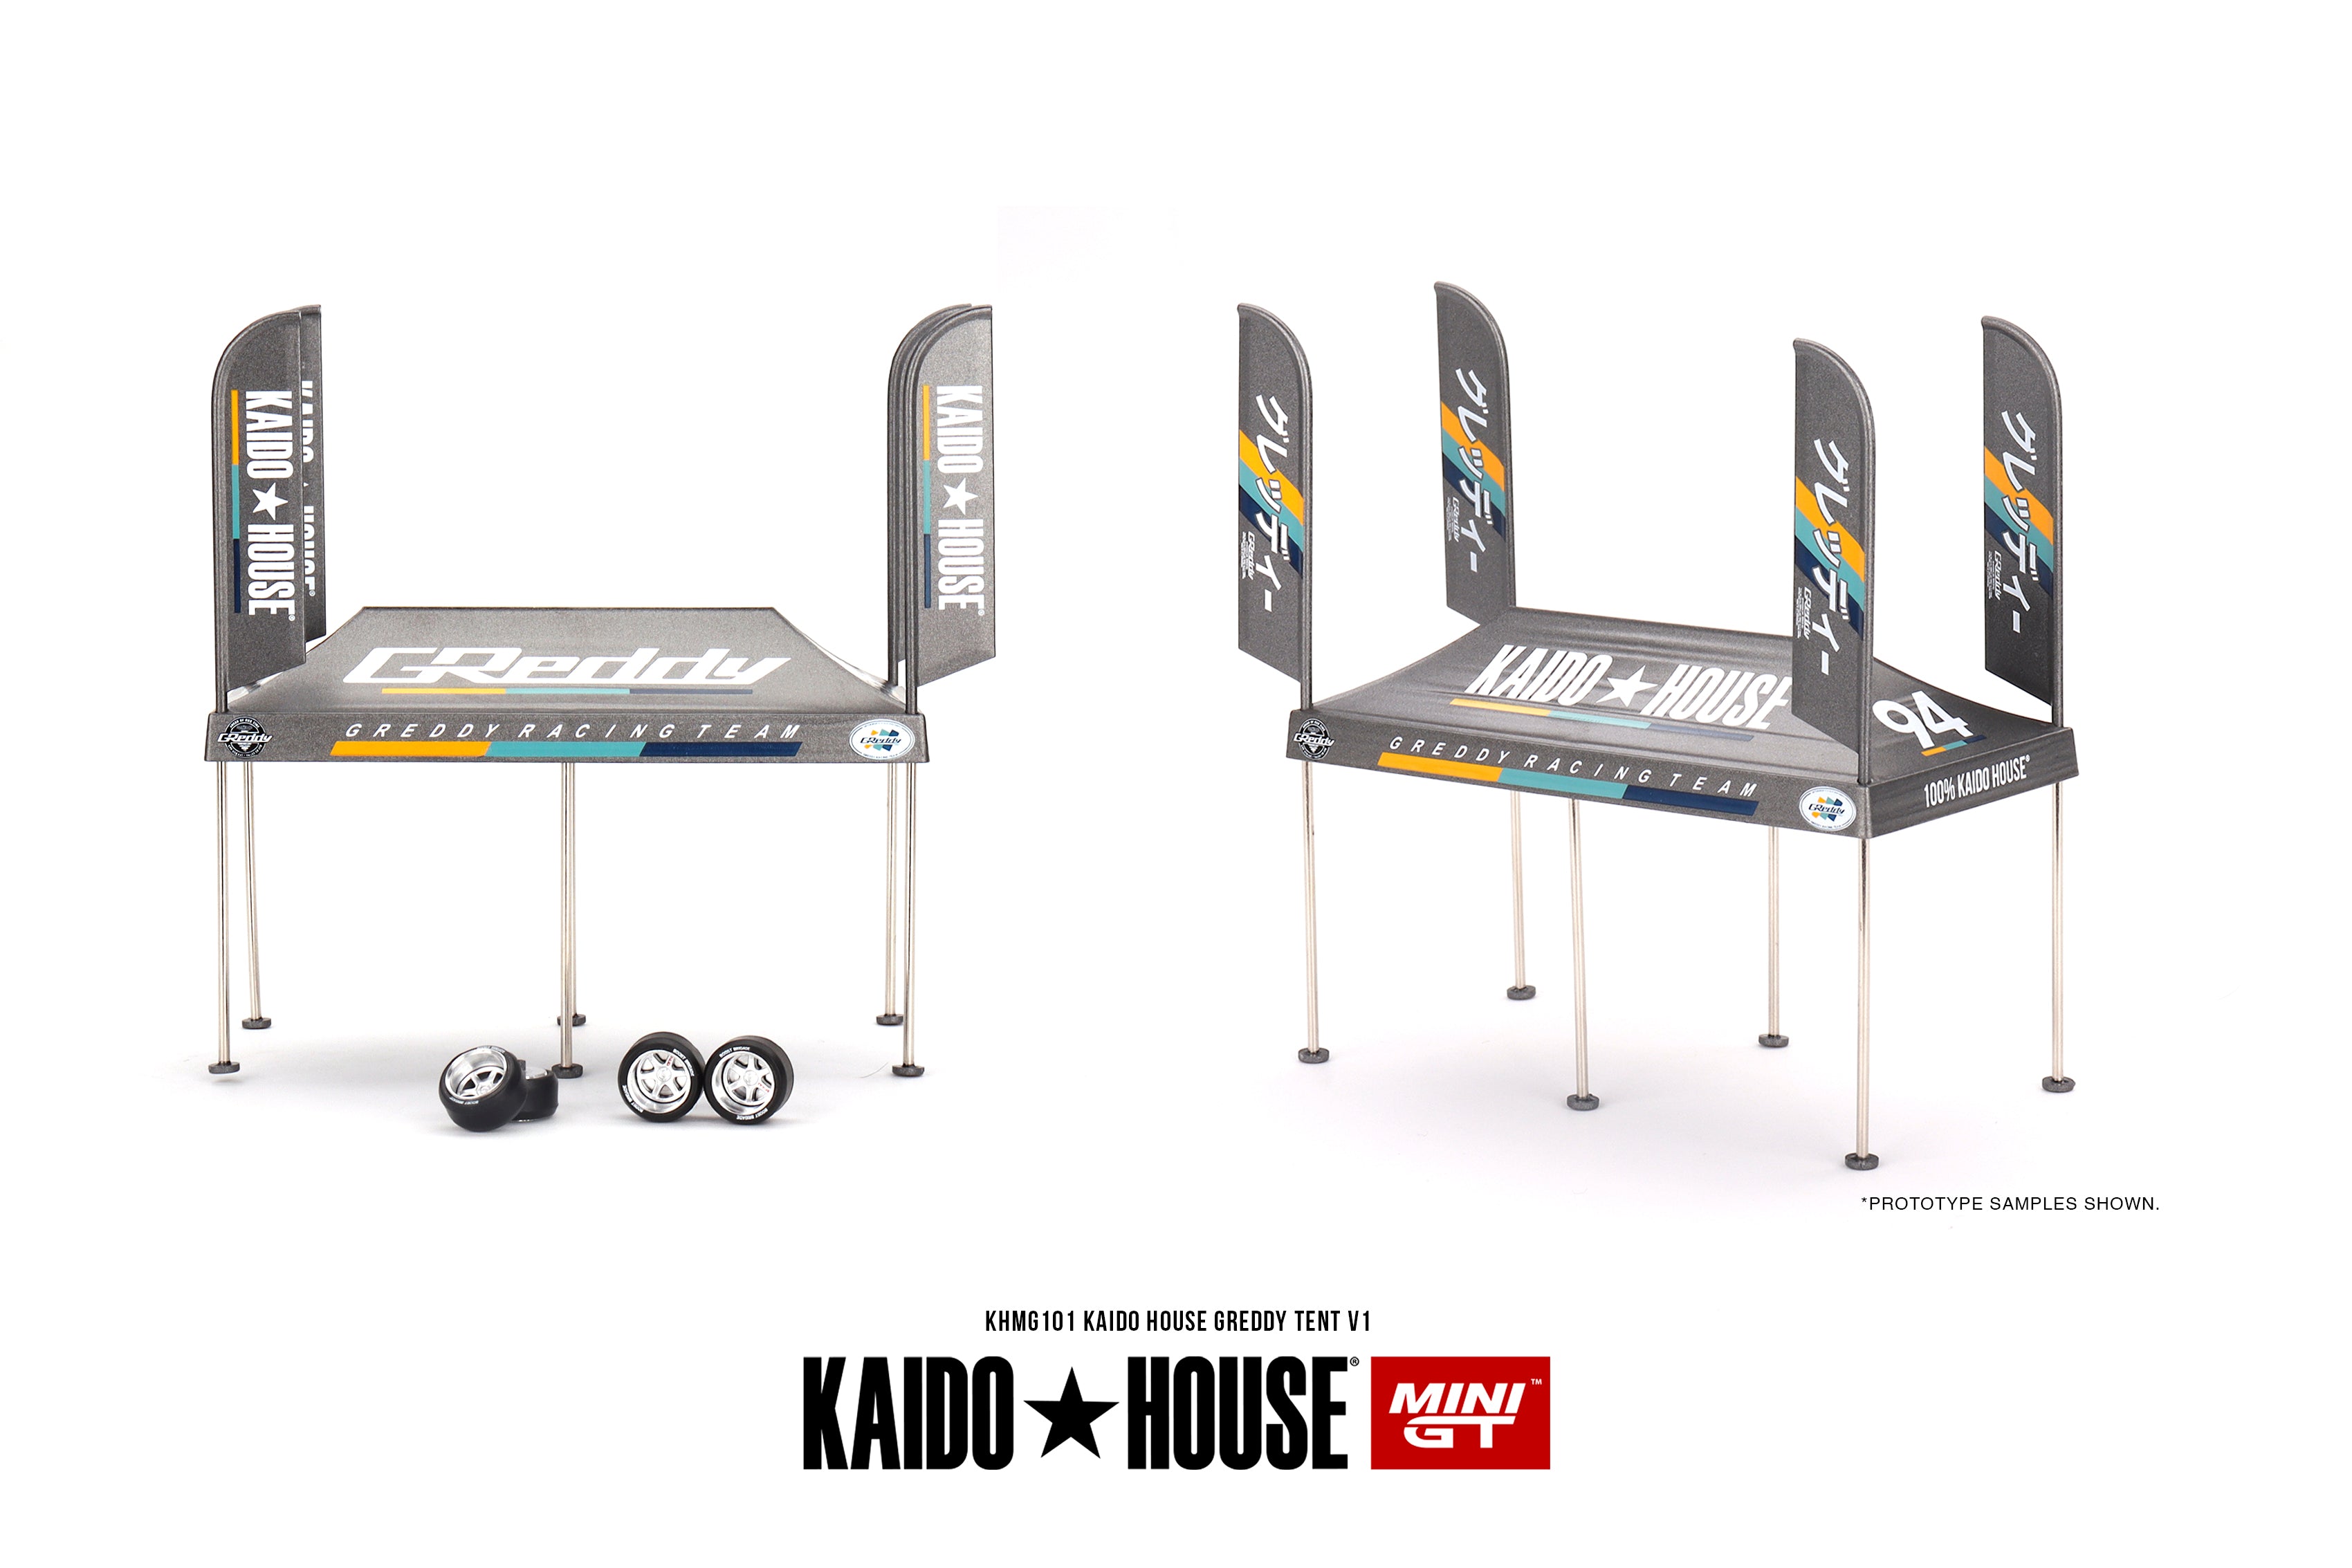 Mini GT Kaido House Greddy Tent V1